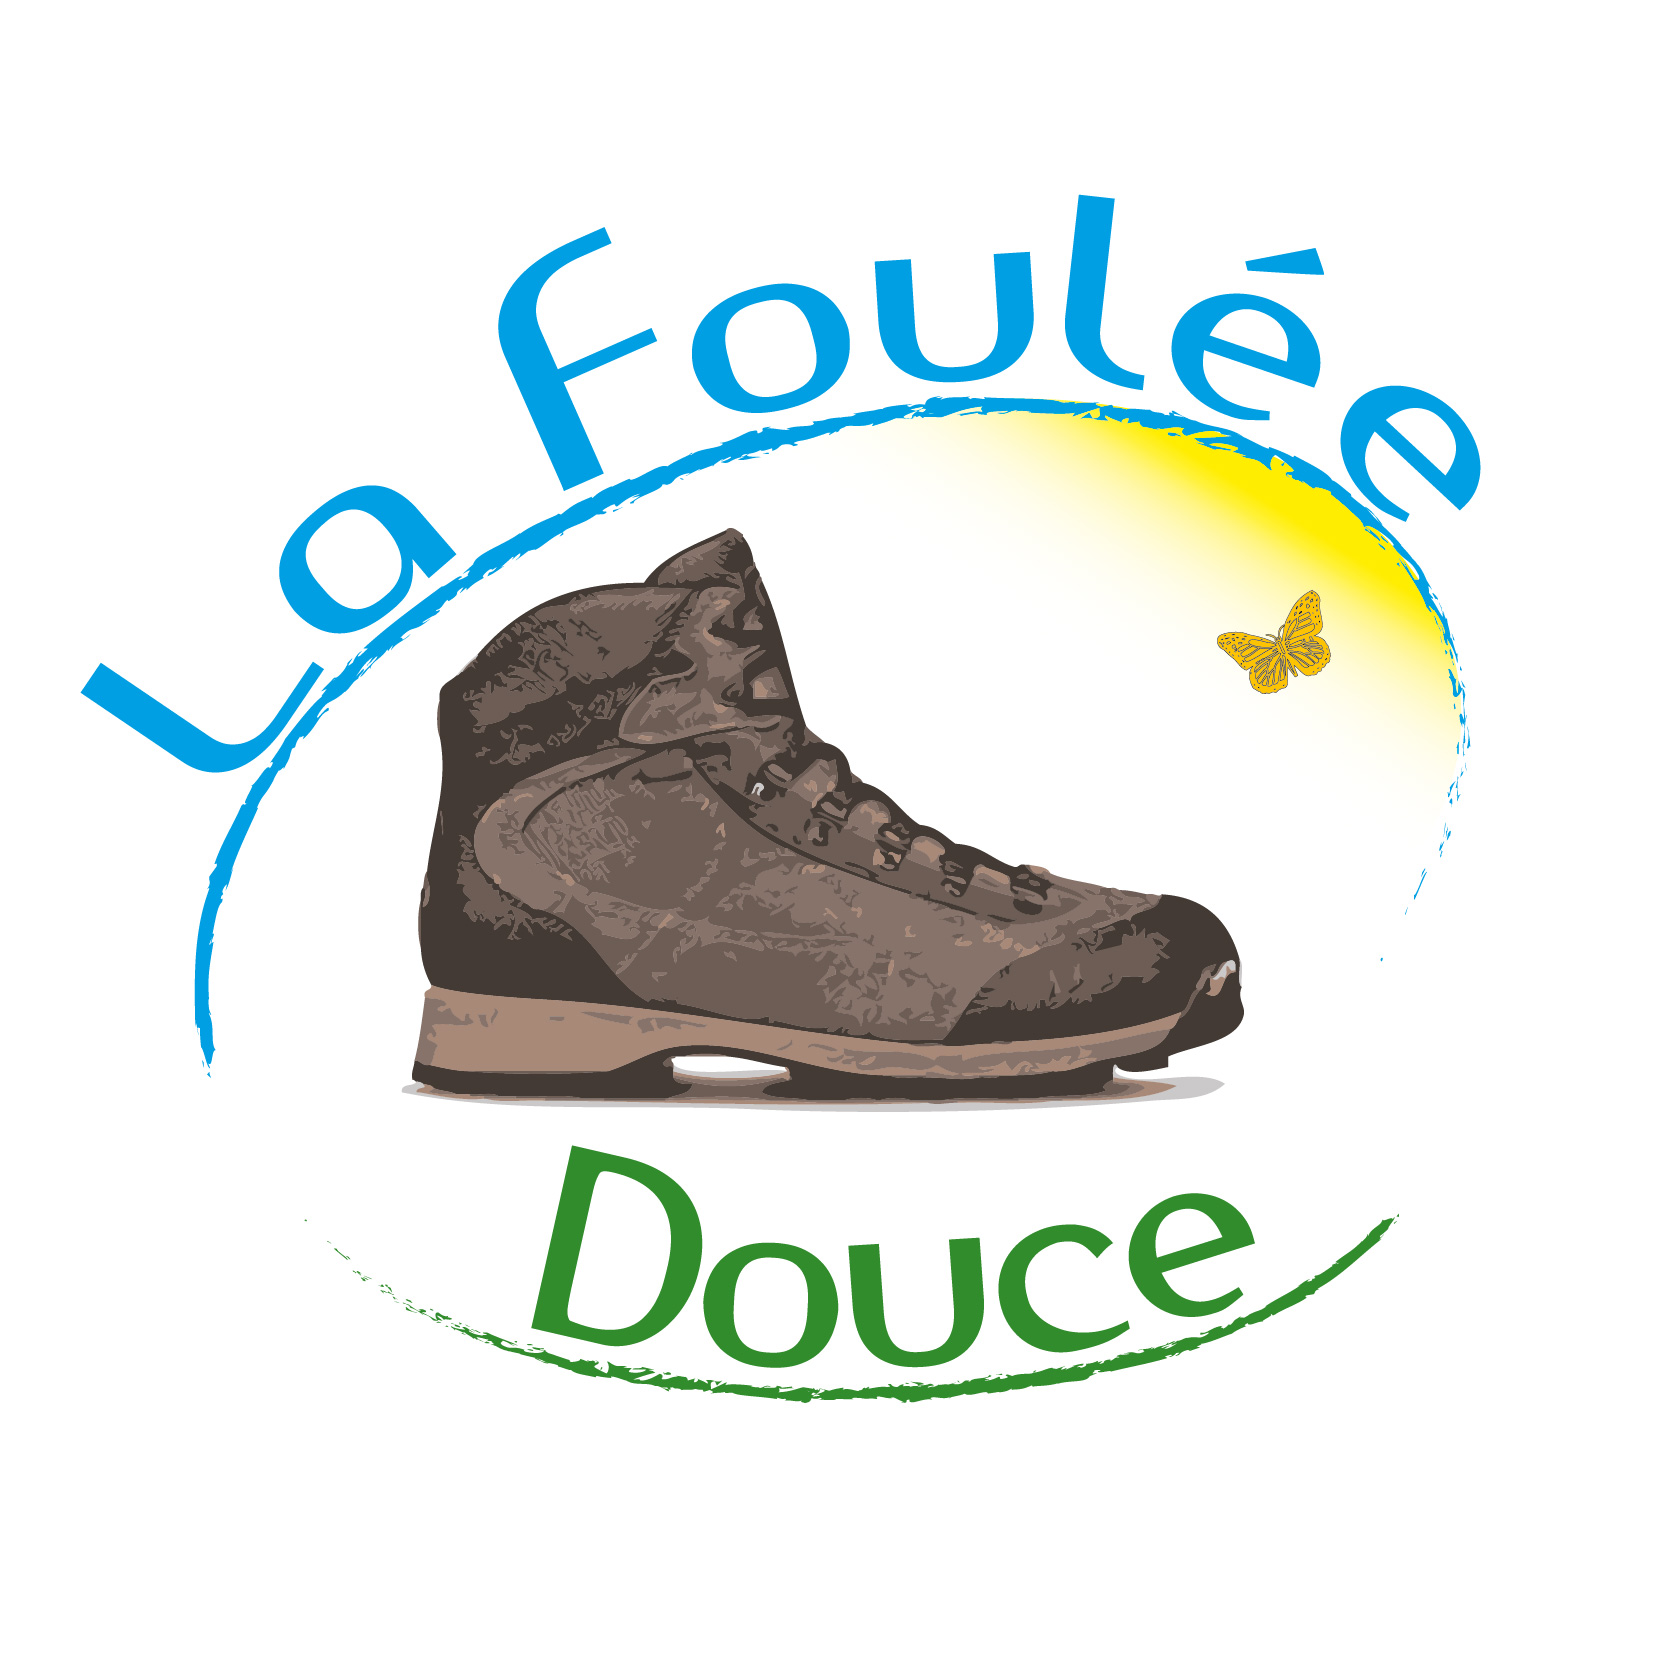 LaFouleeDouce_logo-